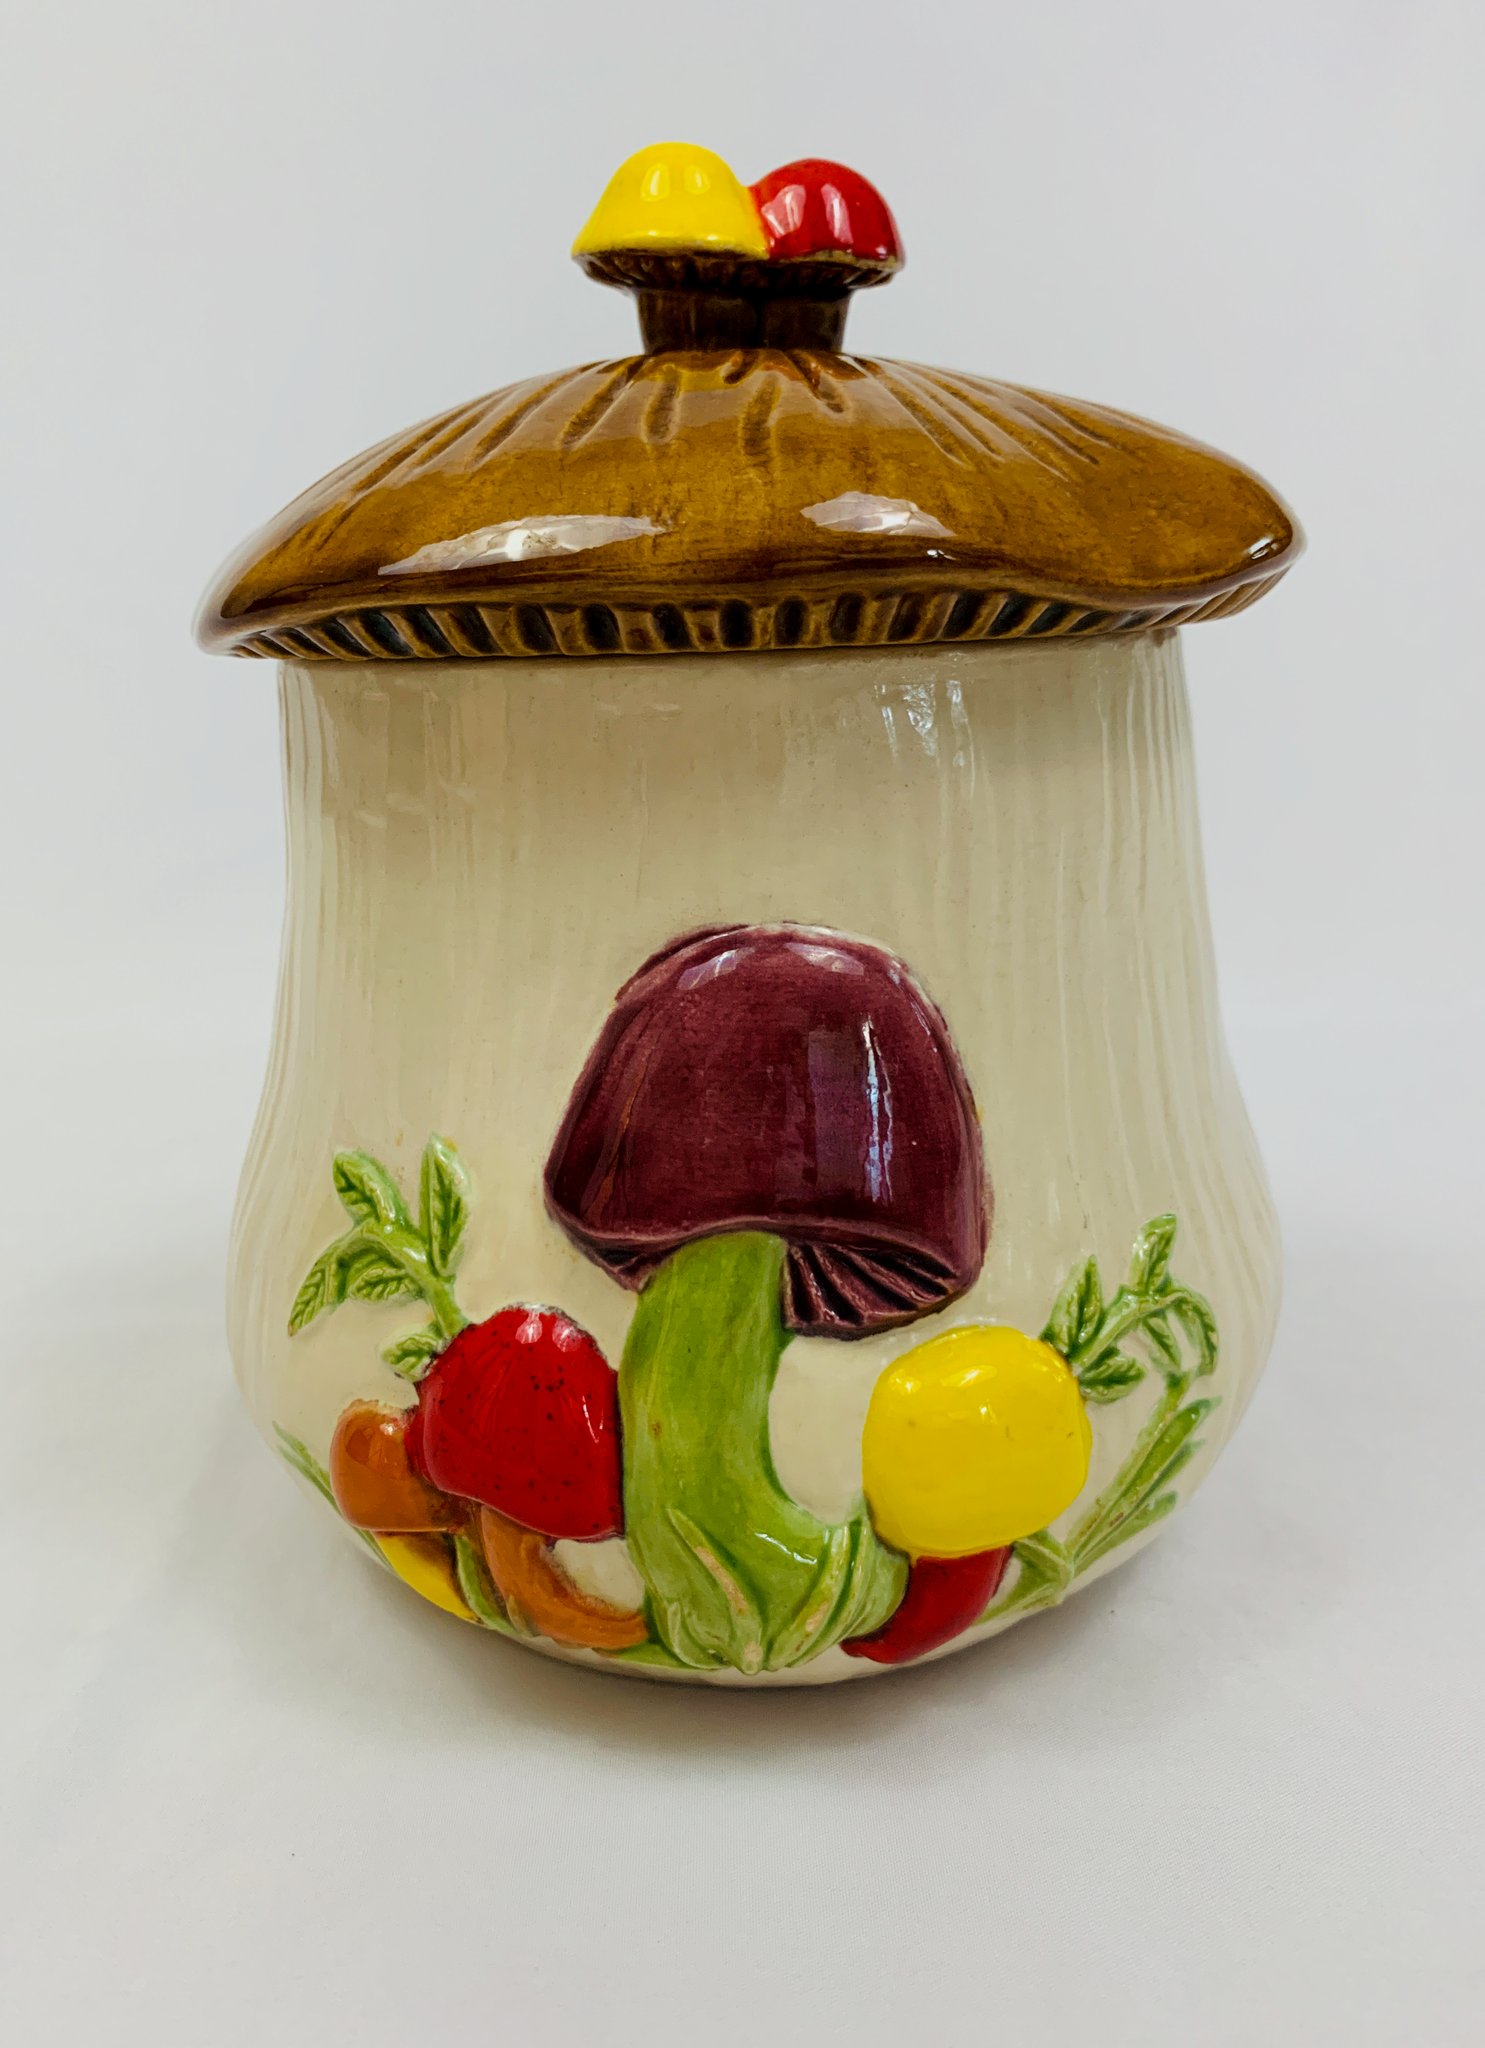 Ceramic Retro 1970's Arnel Mushroom Cookie Jar Vintage Kitchen